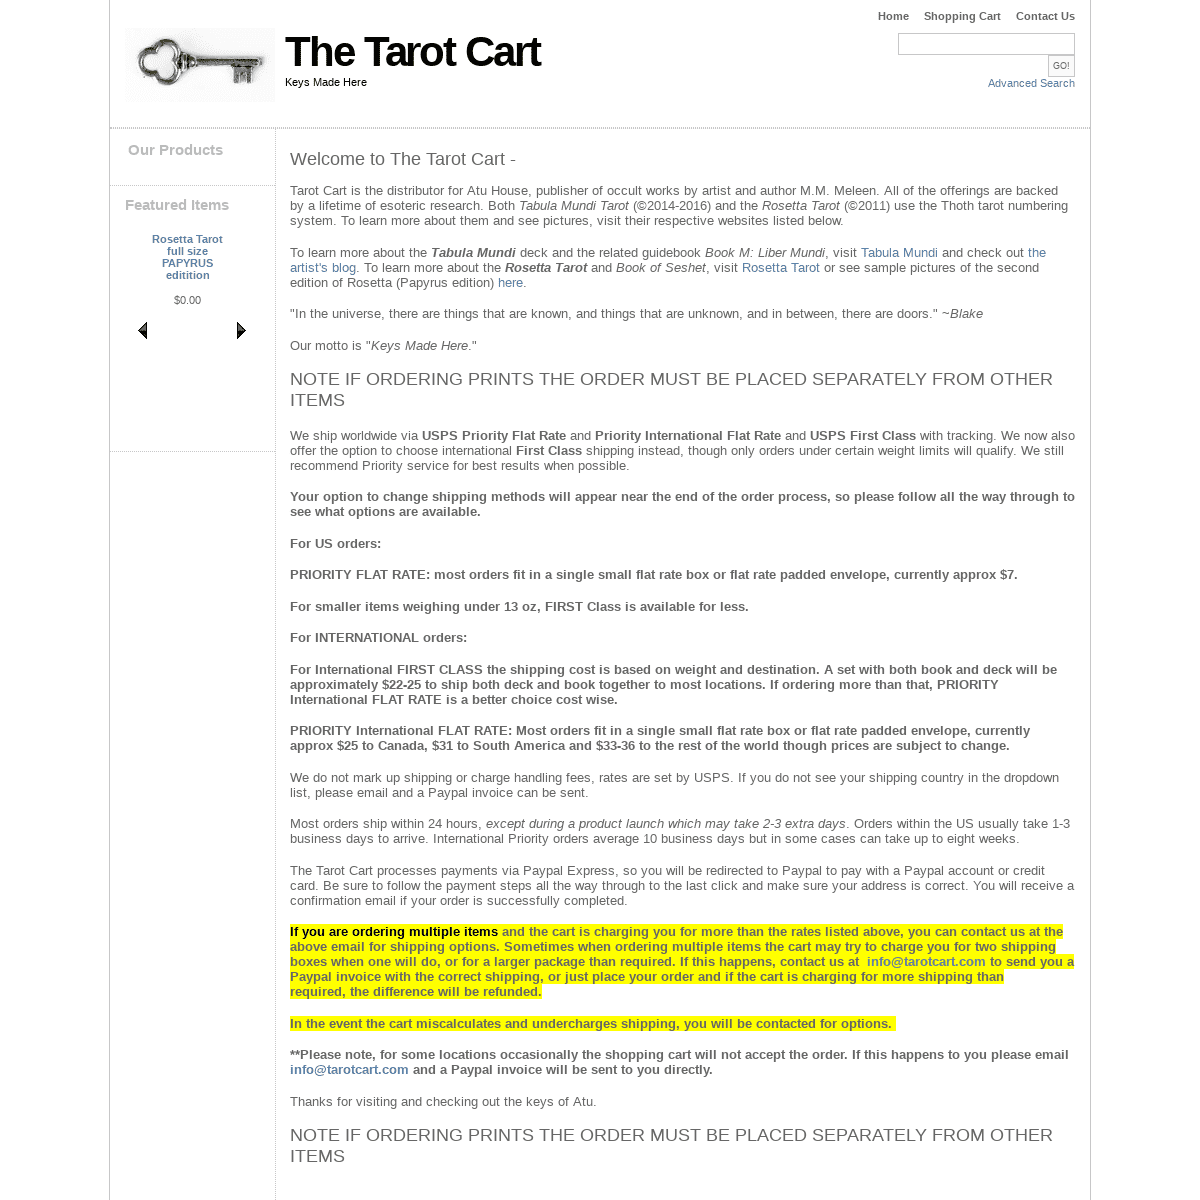 A complete backup of tarotcart.com